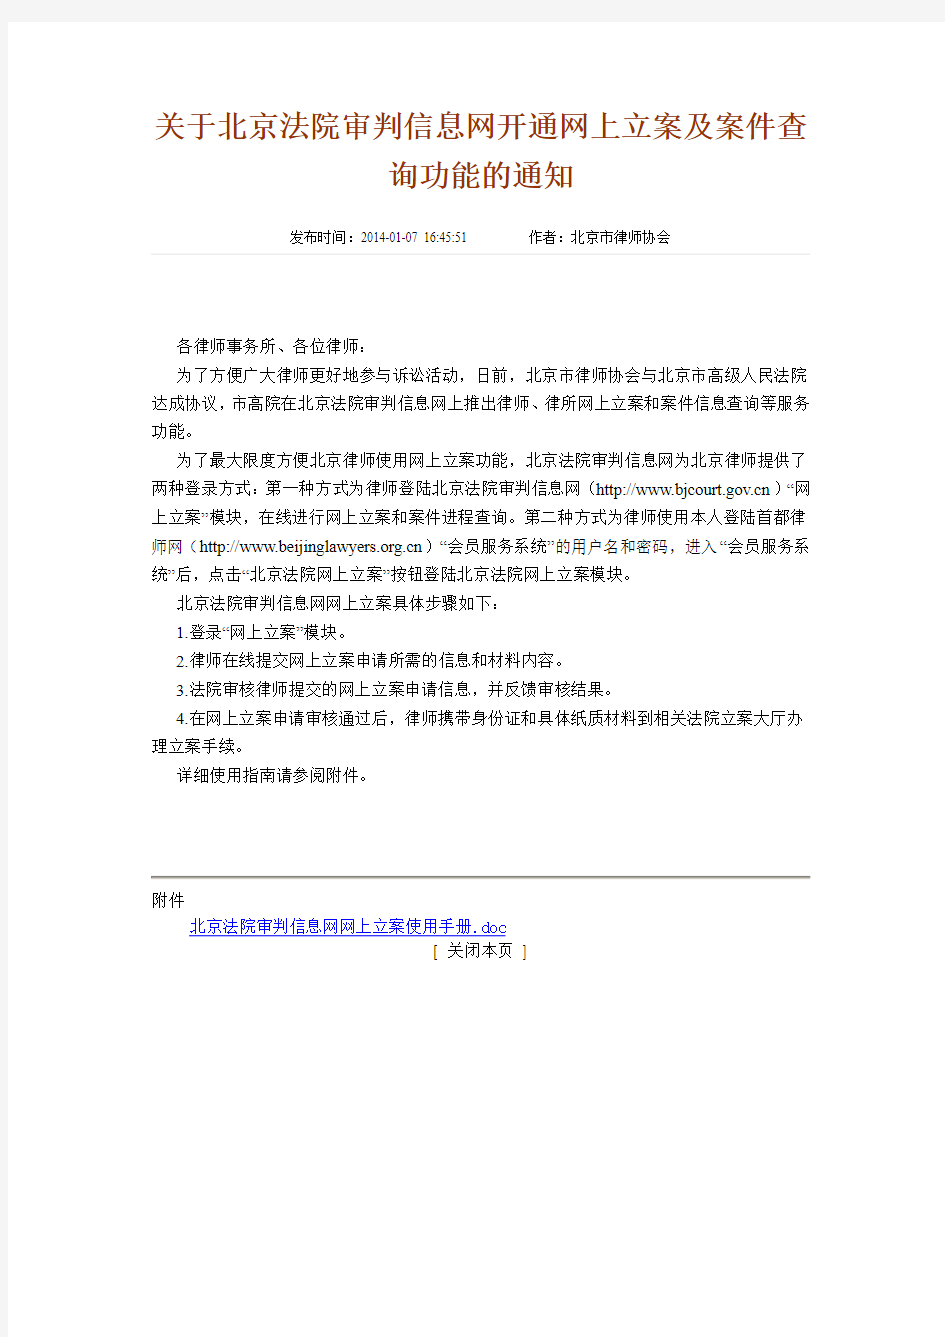 关于北京法院审判信息网开通网上立案及案件查询功能的通知